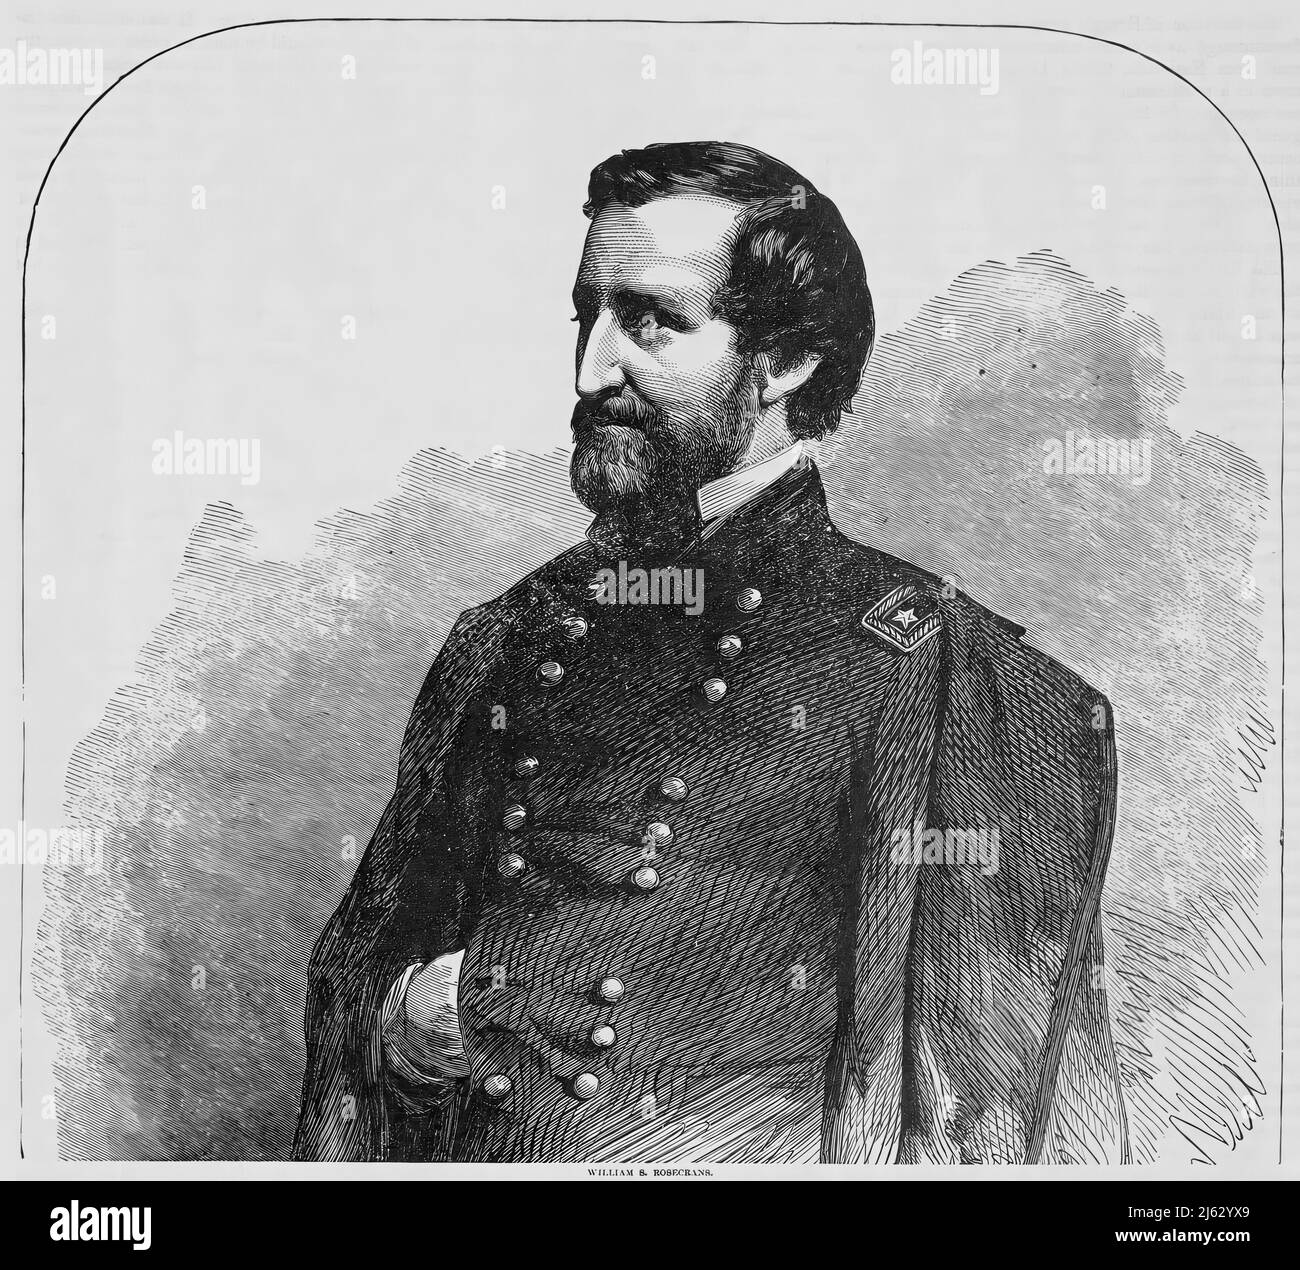 Portrait de William Starke Rosecrans, général de l'Armée de l'Union pendant la Guerre civile américaine. illustration du siècle 19th Banque D'Images